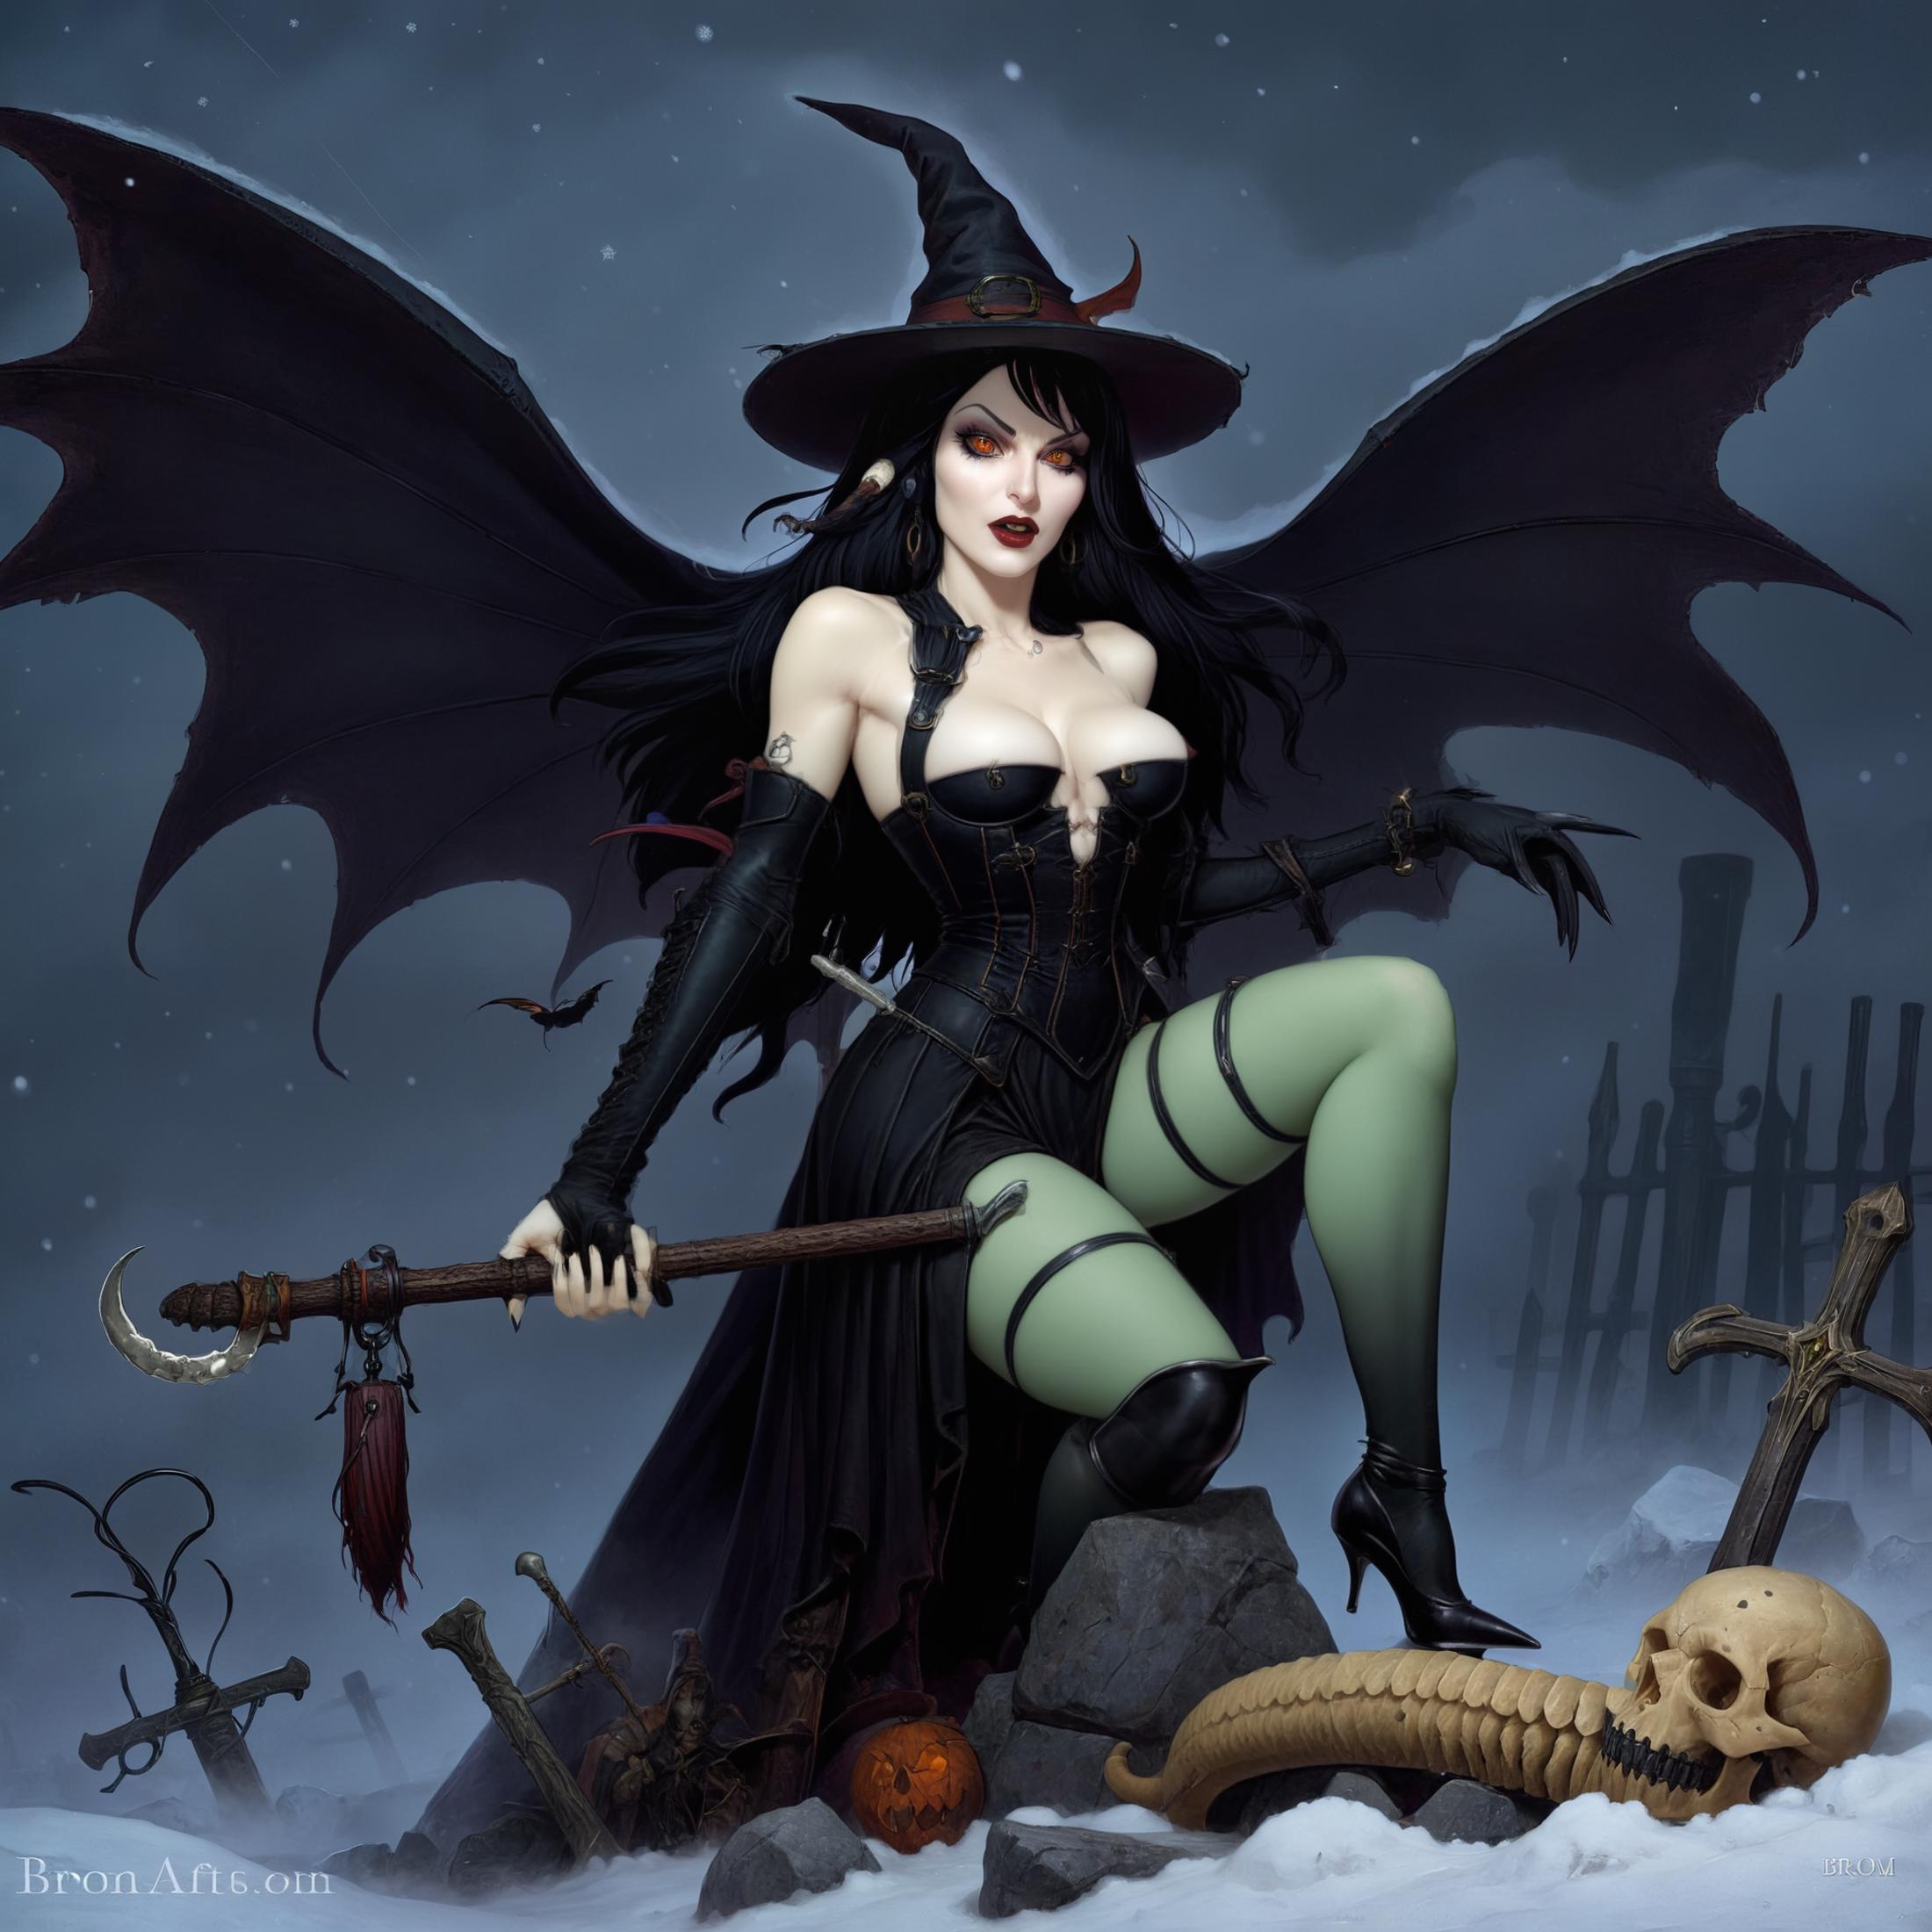 Gerald Brom XL - Dark Fantasy Art image by onnx_nsfw